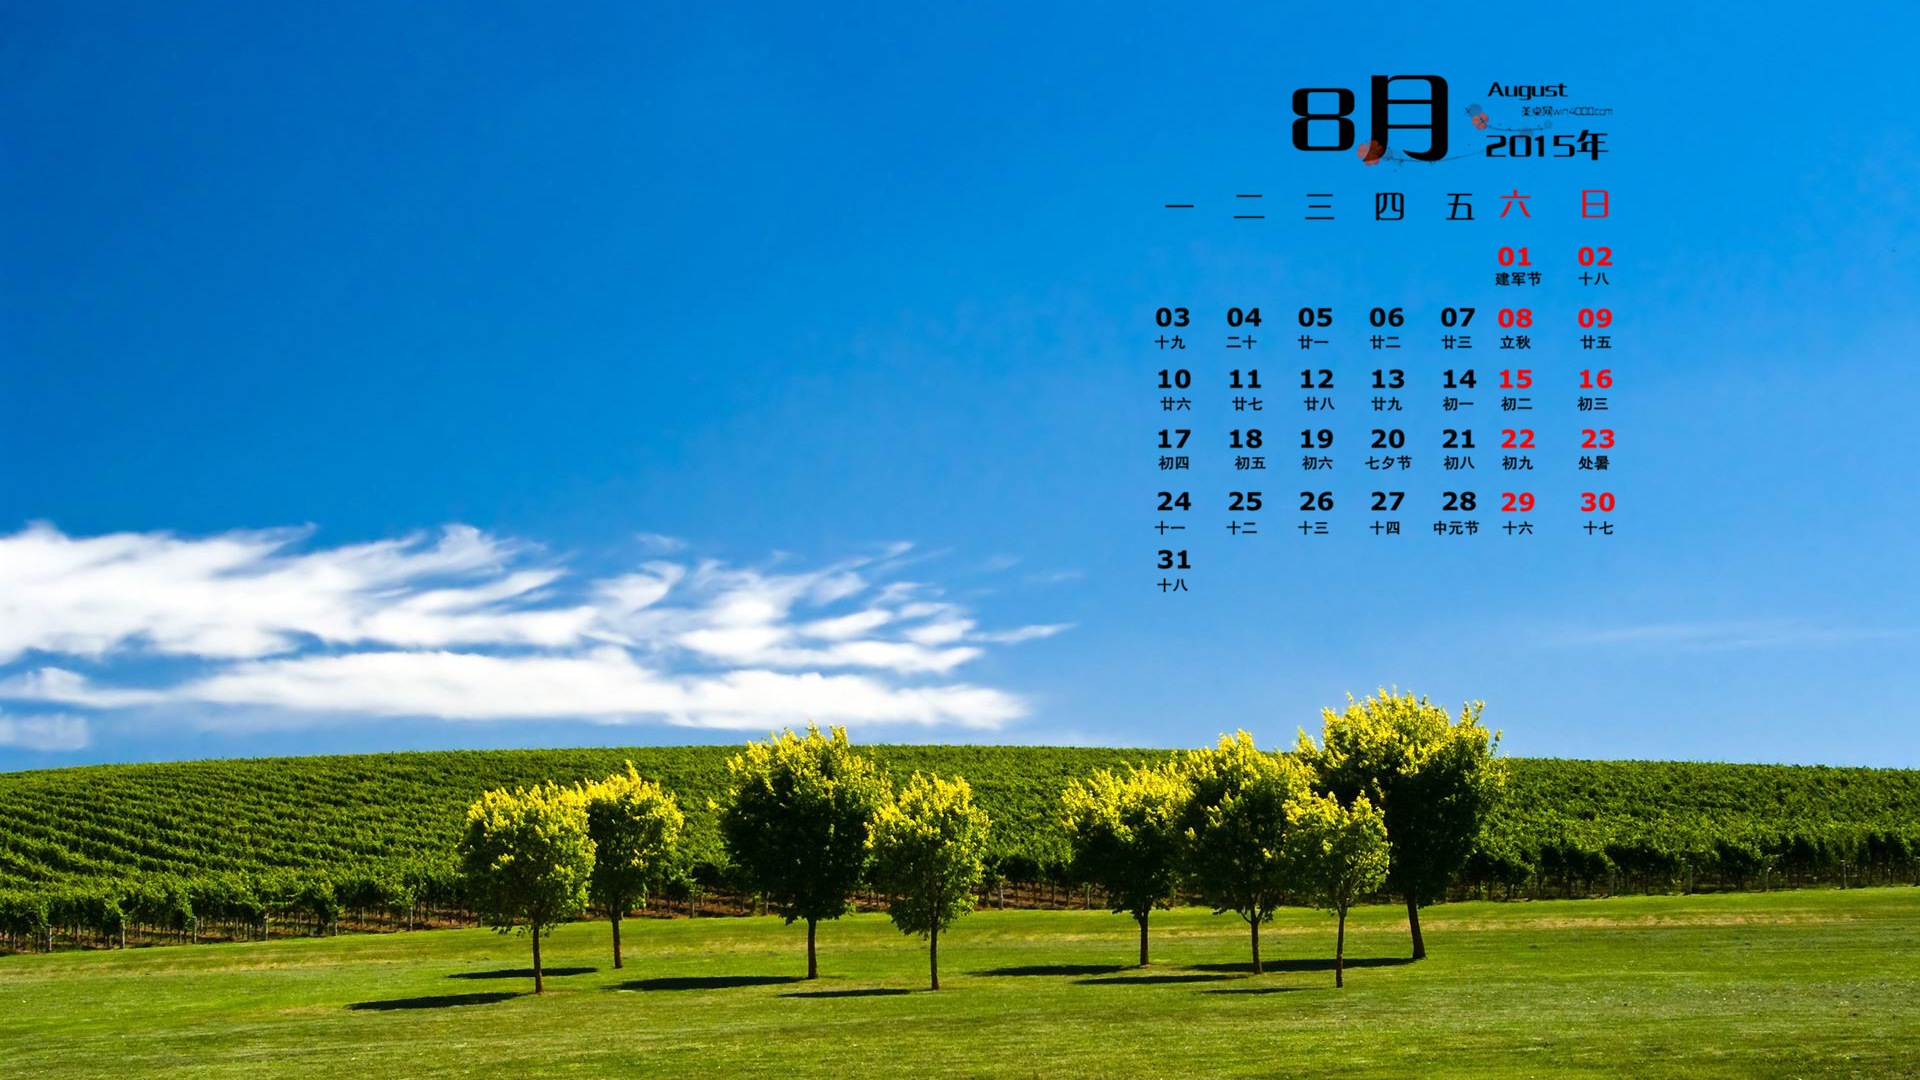 August 2015 calendar wallpaper (1) #18 - 1920x1080